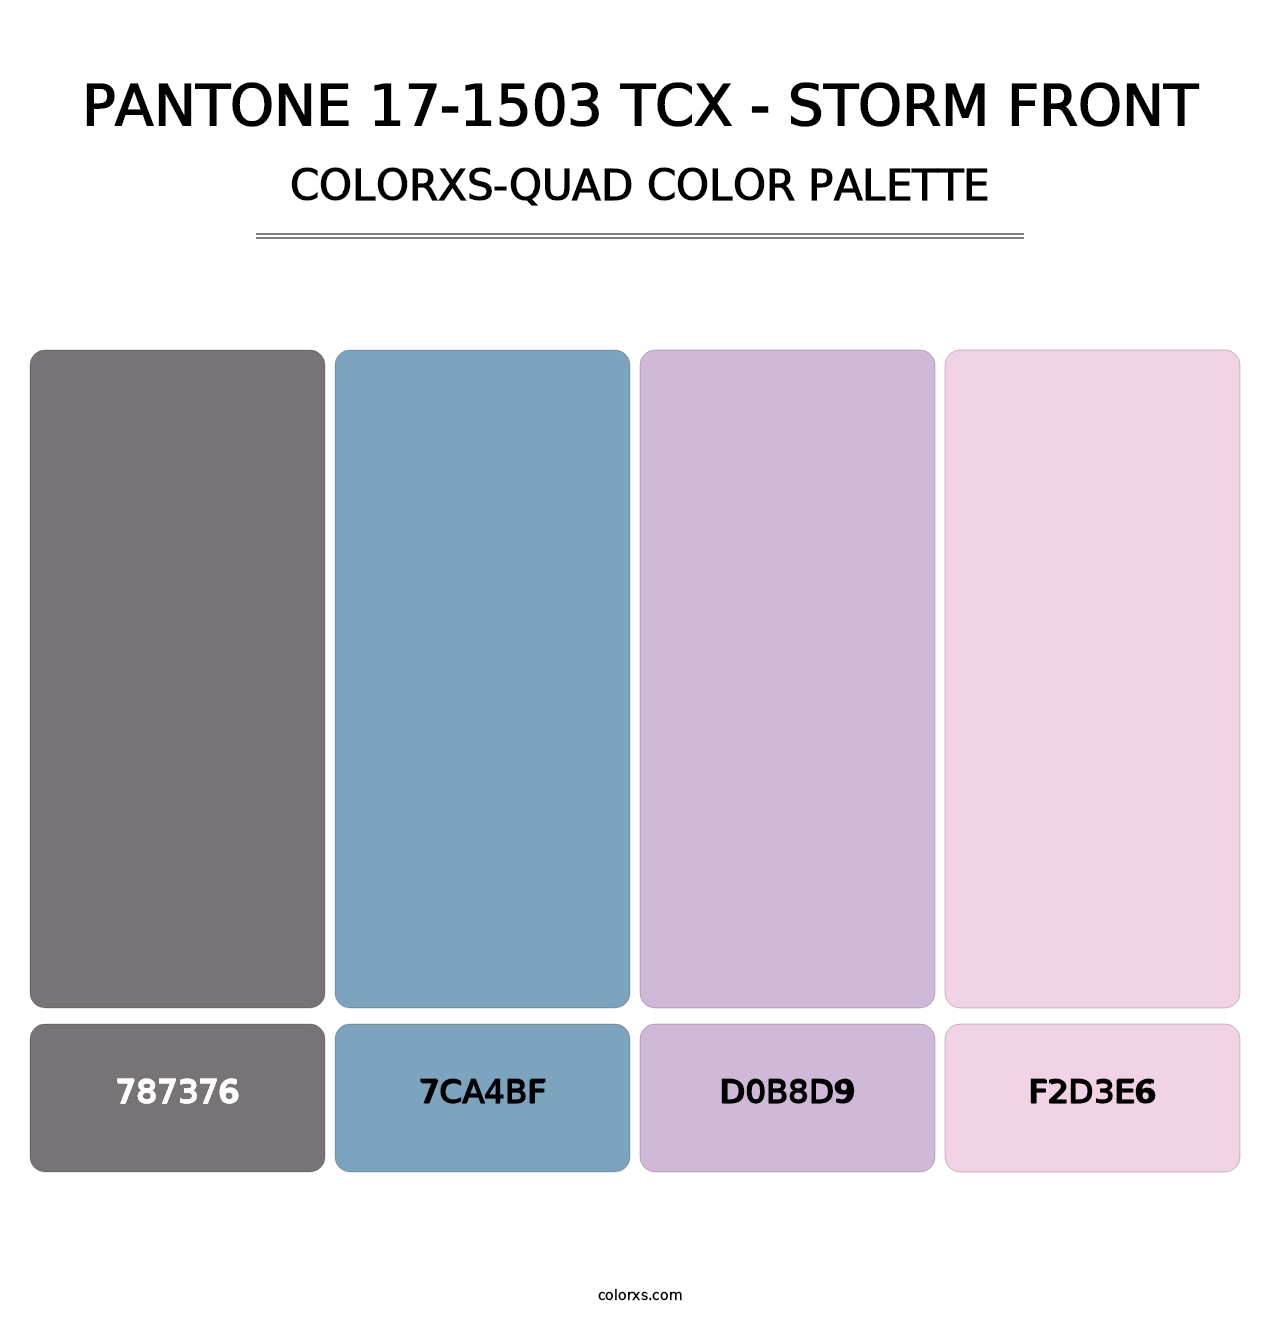 PANTONE 17-1503 TCX - Storm Front - Colorxs Quad Palette